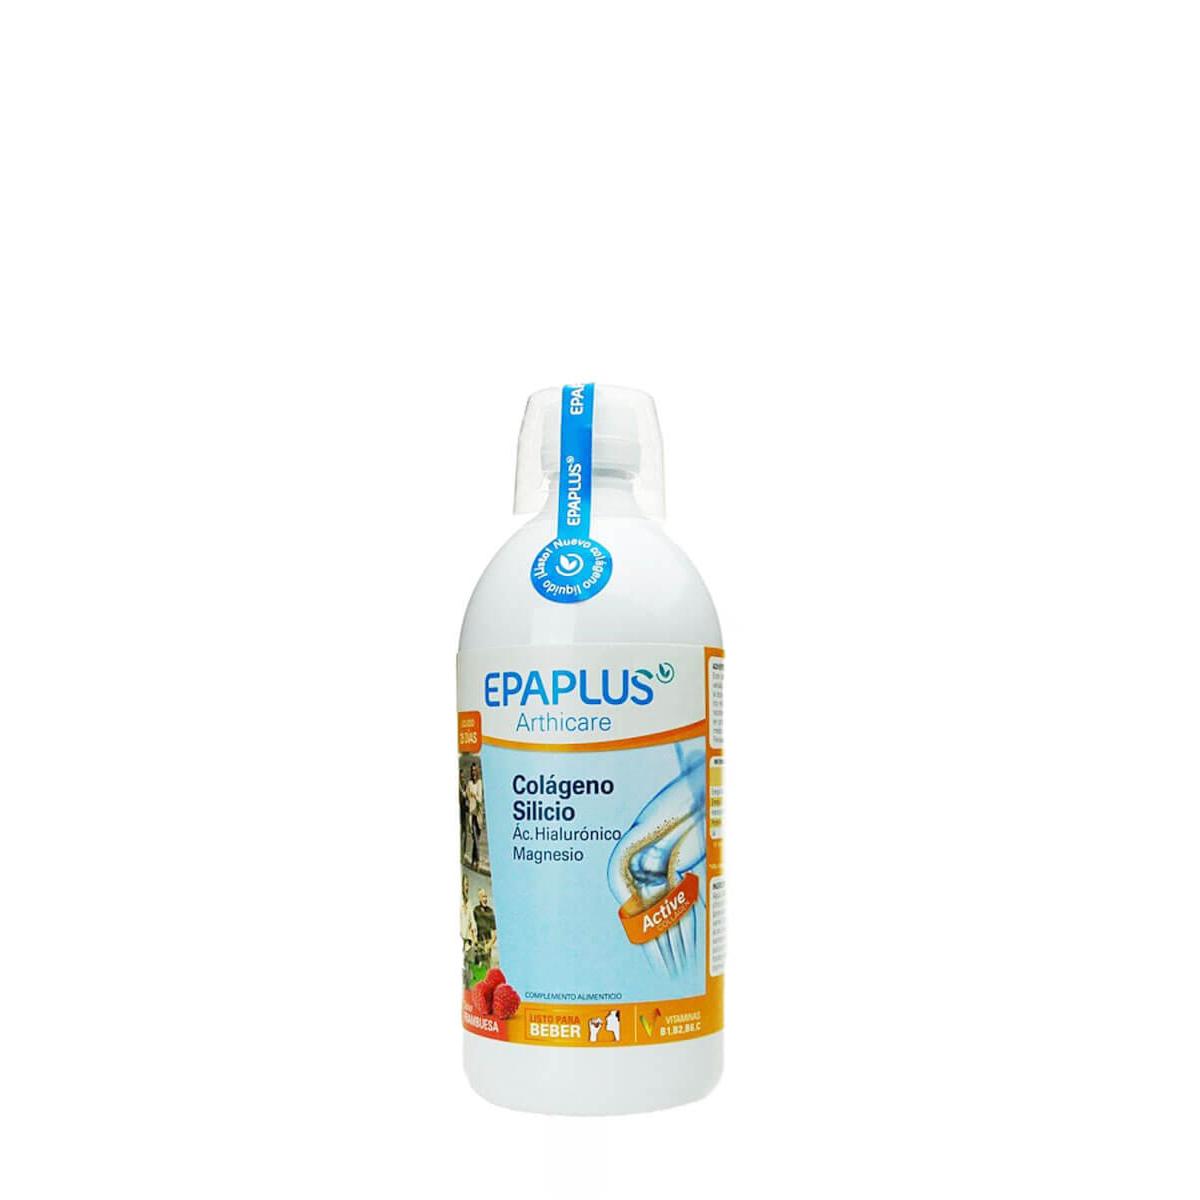 Epaplus - Epaplus arthicare colágeno sabor frambuesa 1 litro